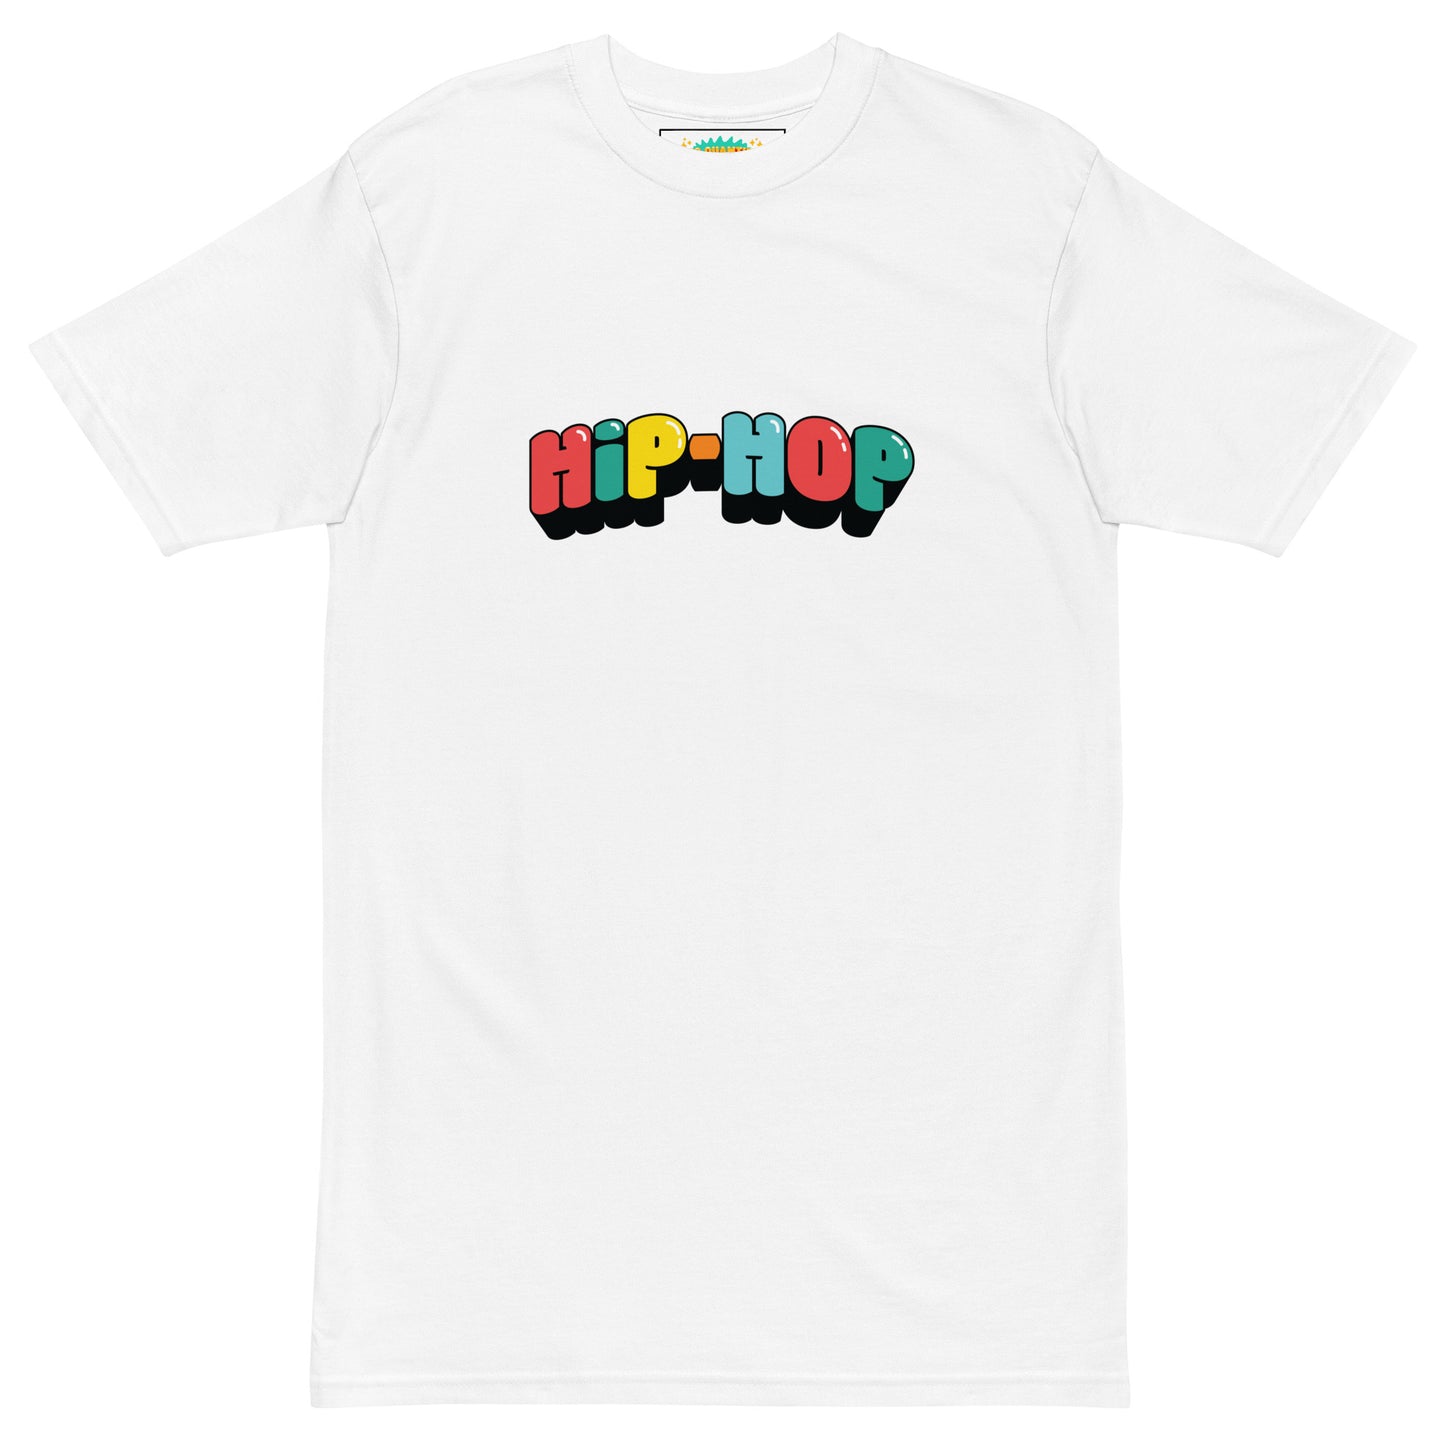 "HIP-HOP" t-shirt